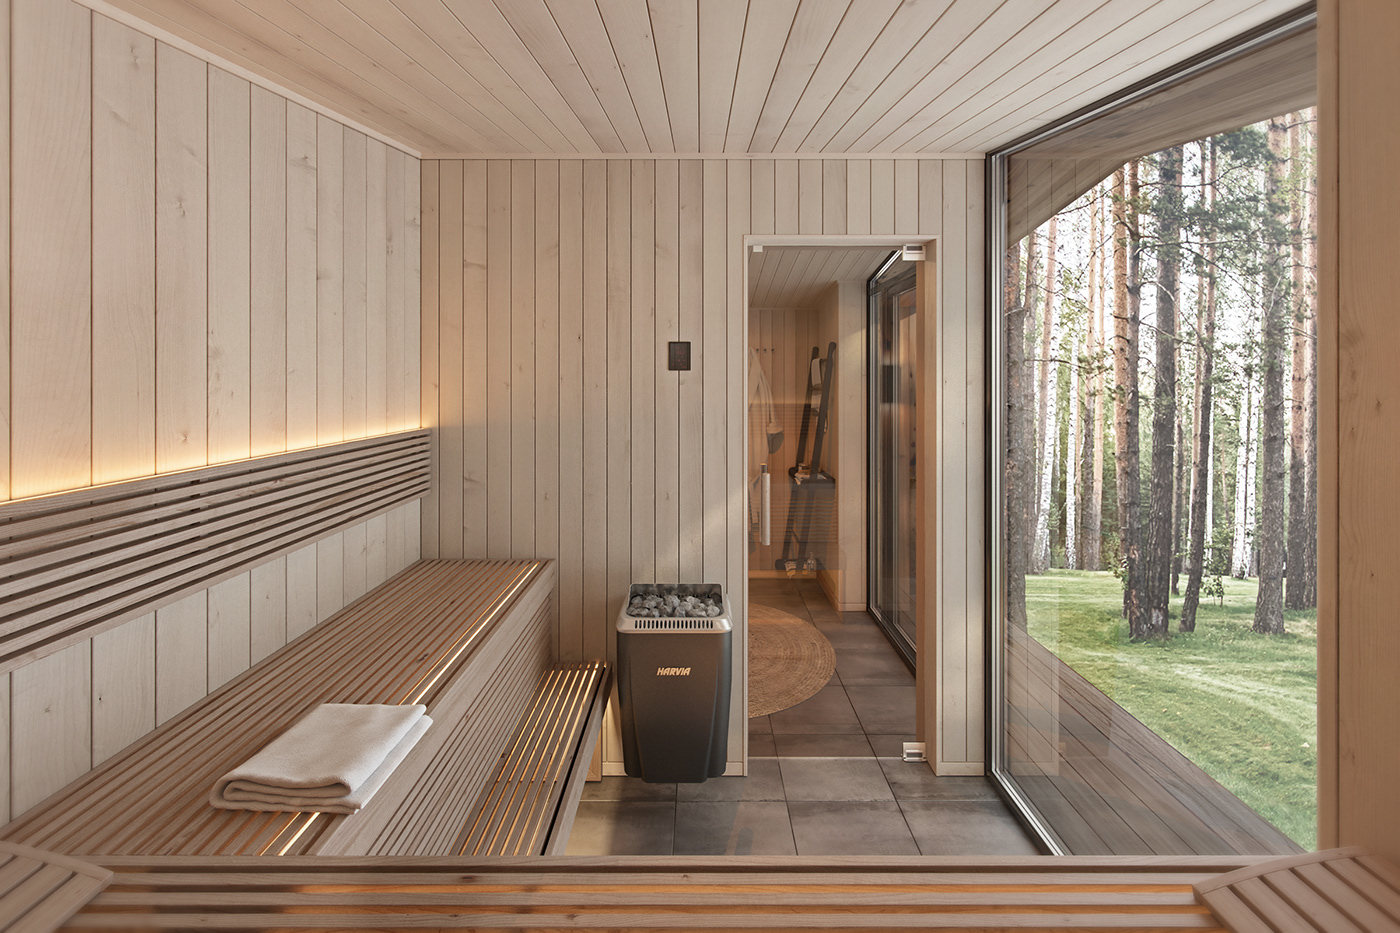 3ds max architecture interior design  Render Sauna Smallhouse visualization vray